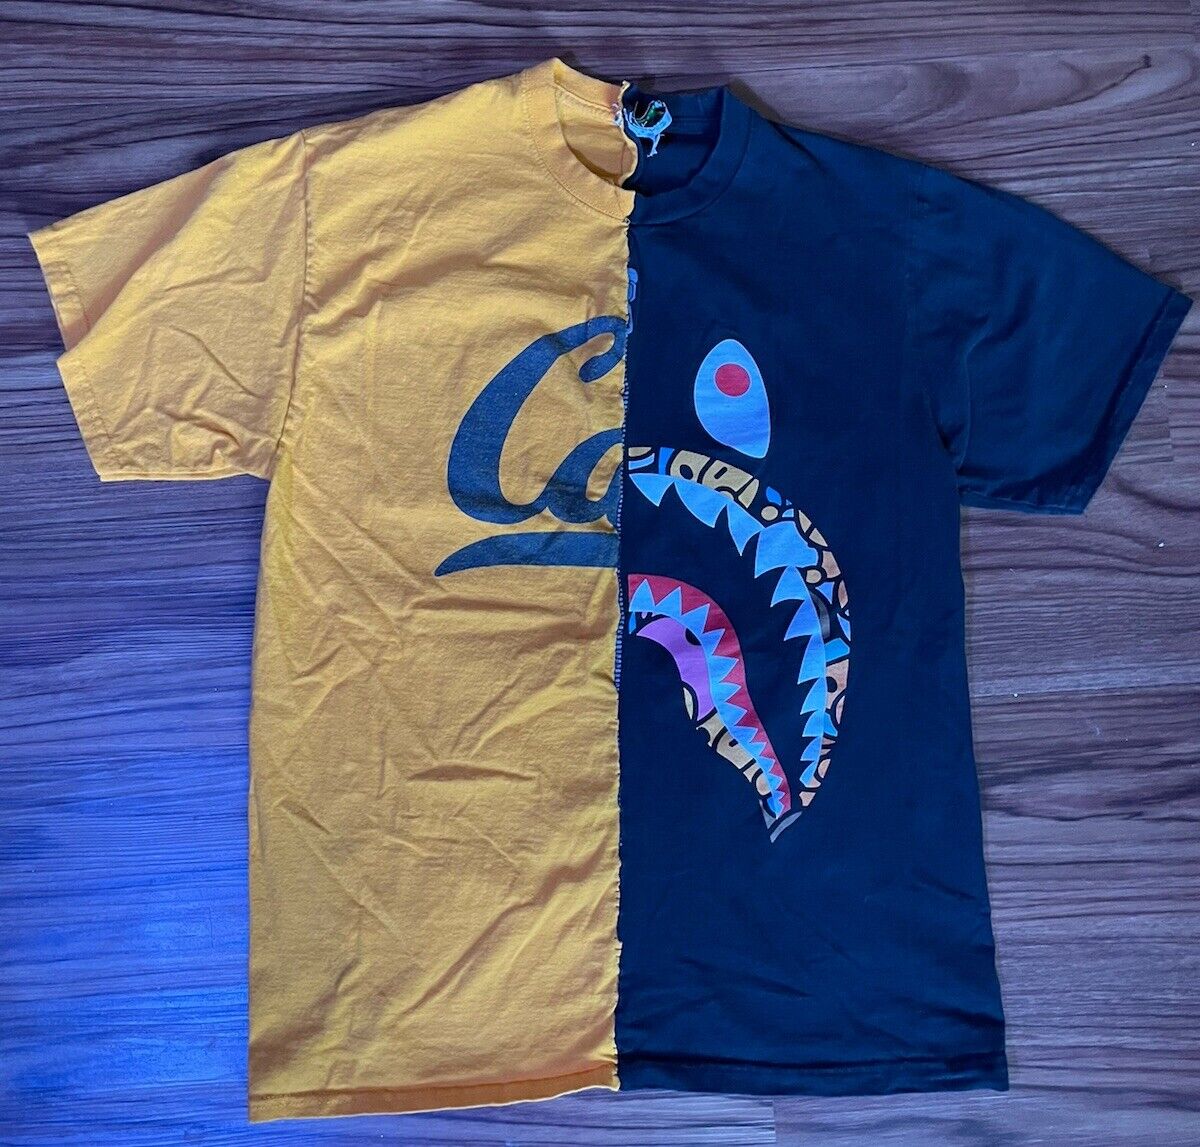 Sz M Custom Split Bape & Cal Bears T Shirt Medium Streetwear Black Yellow Shark